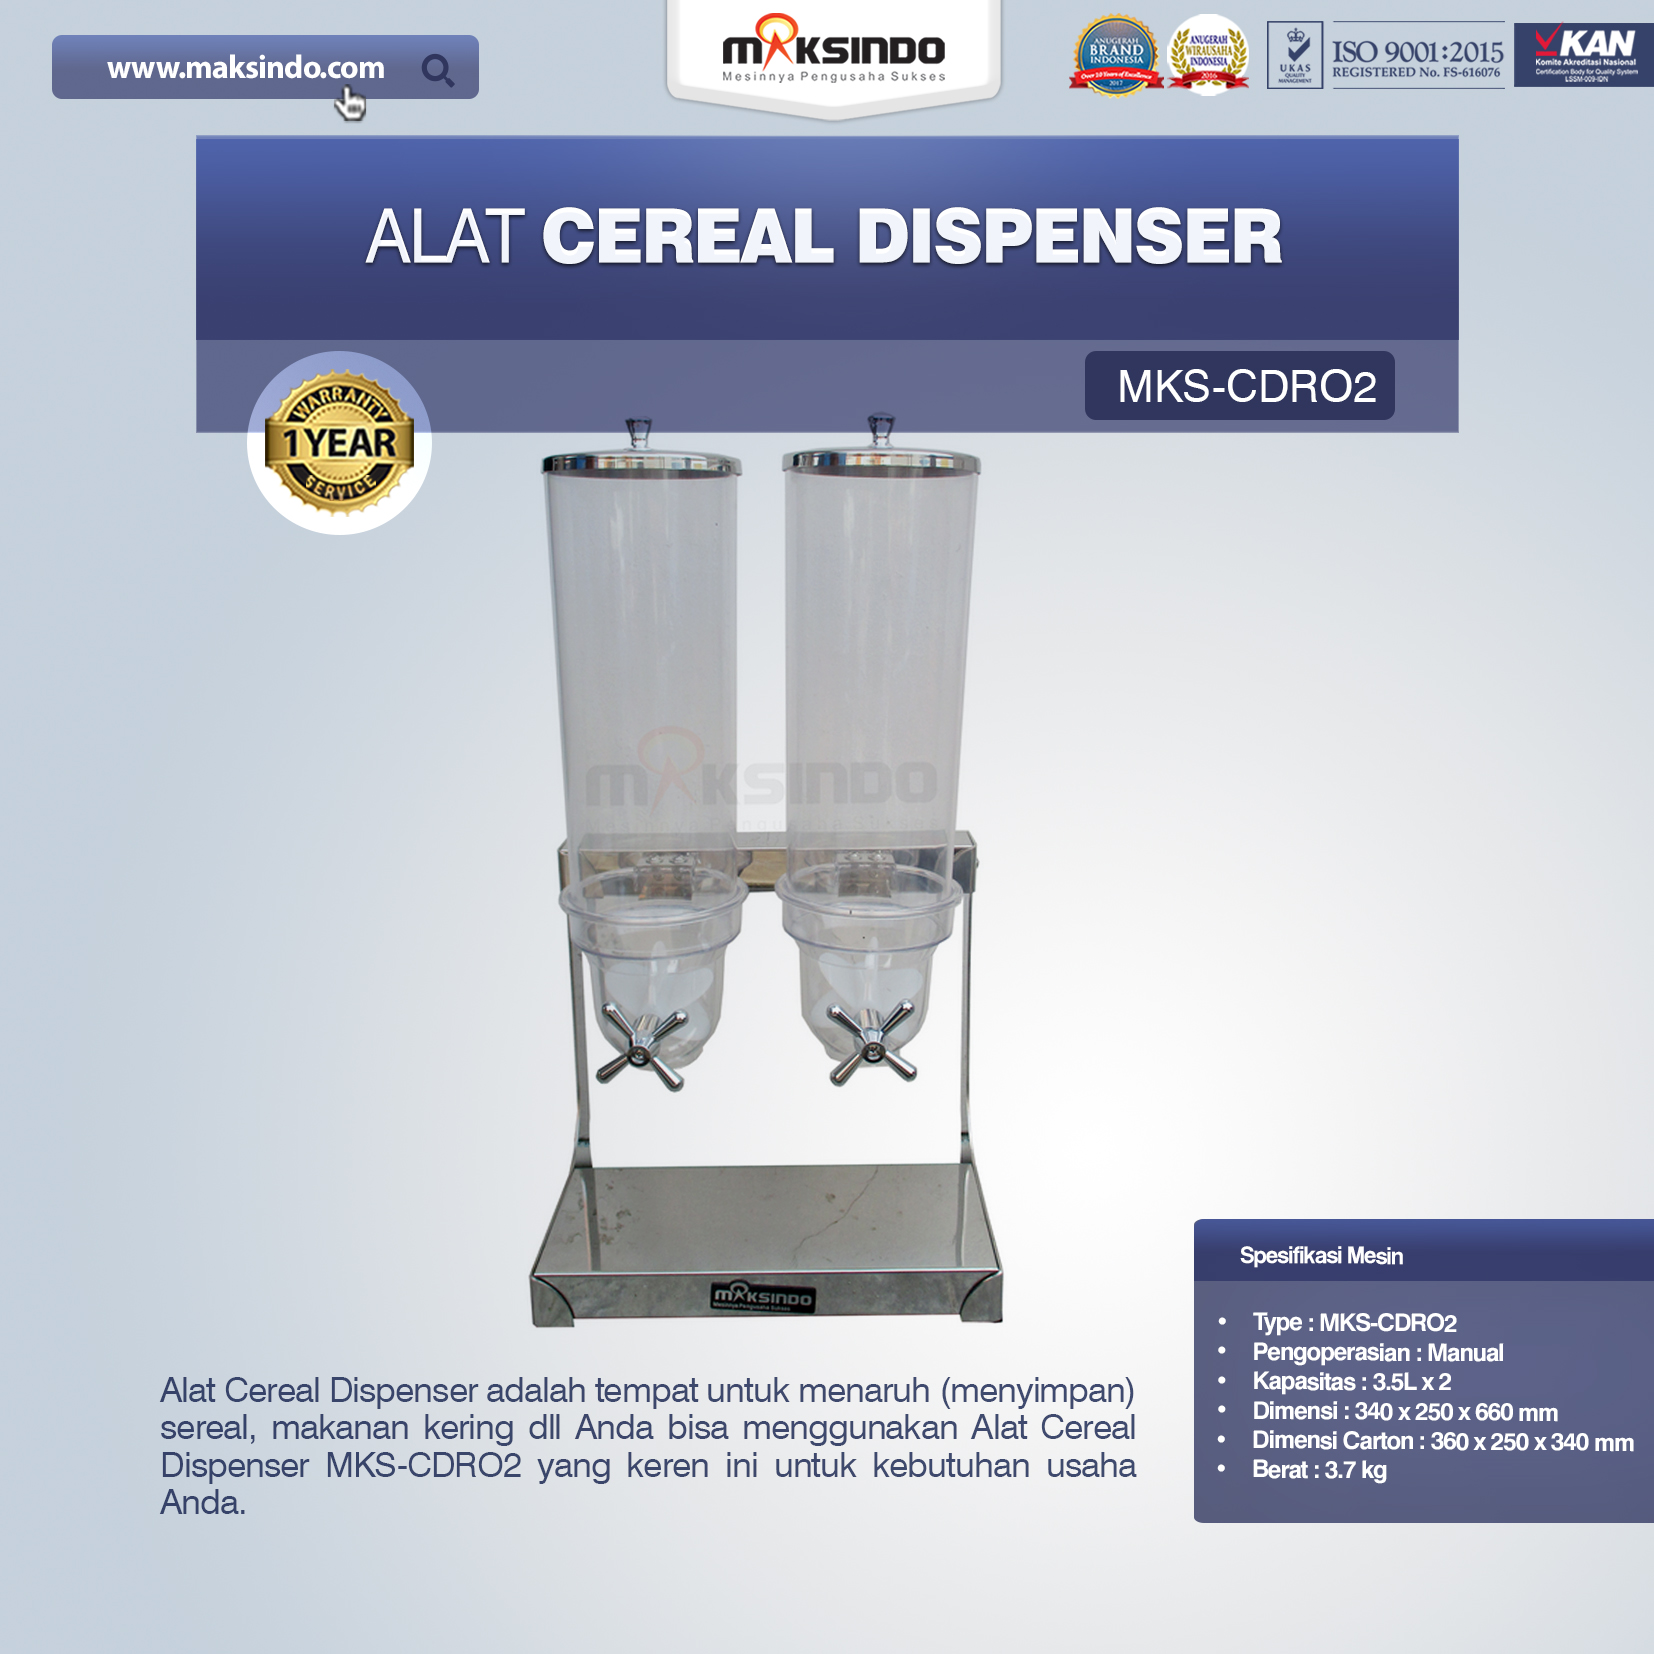 Jual Alat Cereal Dispenser MKS-CDR02 di Yogyakarta